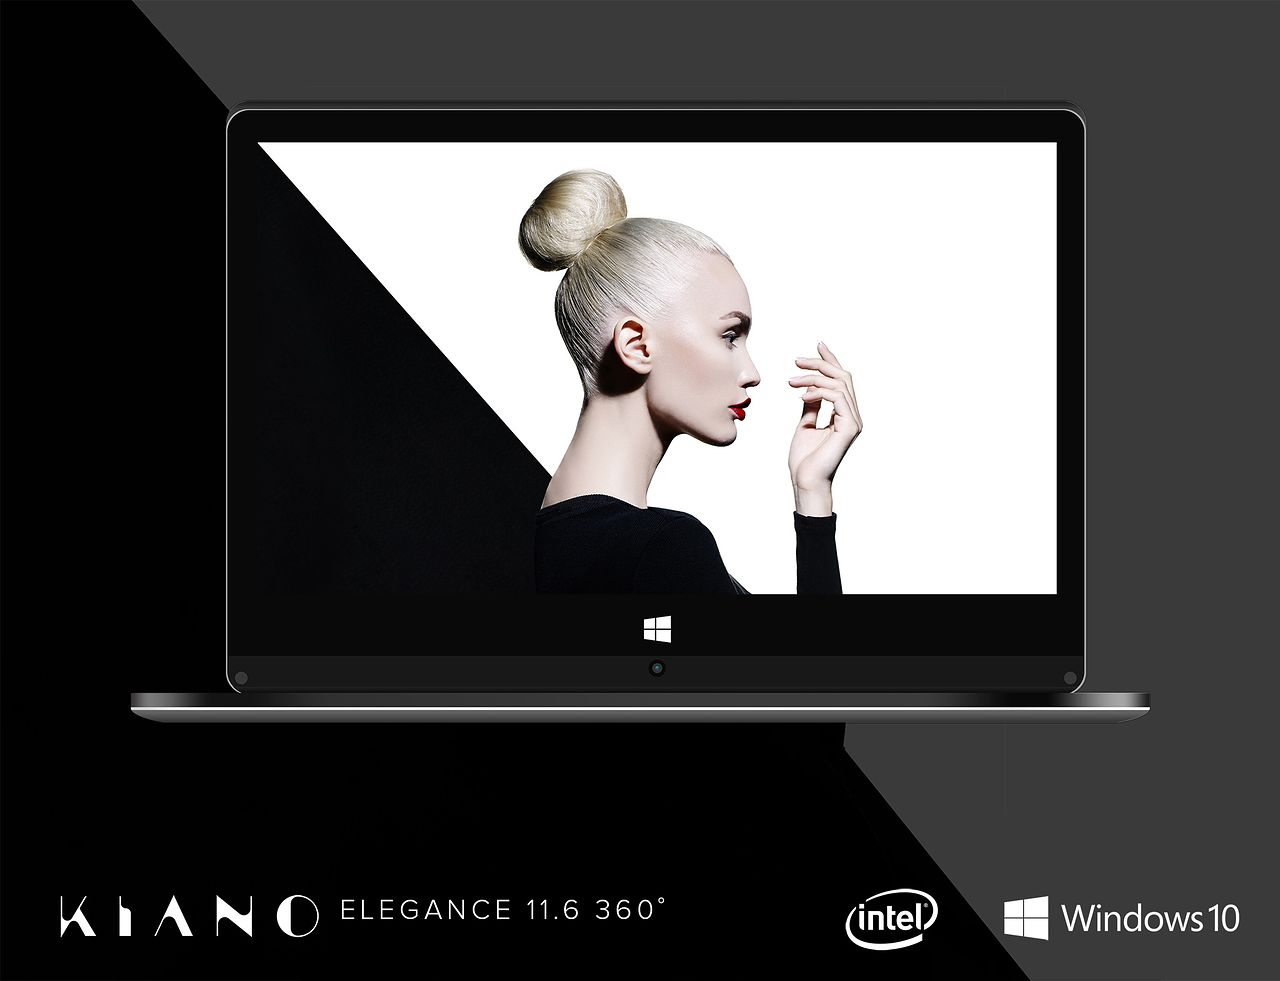 KIANO prezentuje konwertowalnego laptopa Elegance 11.6 360°